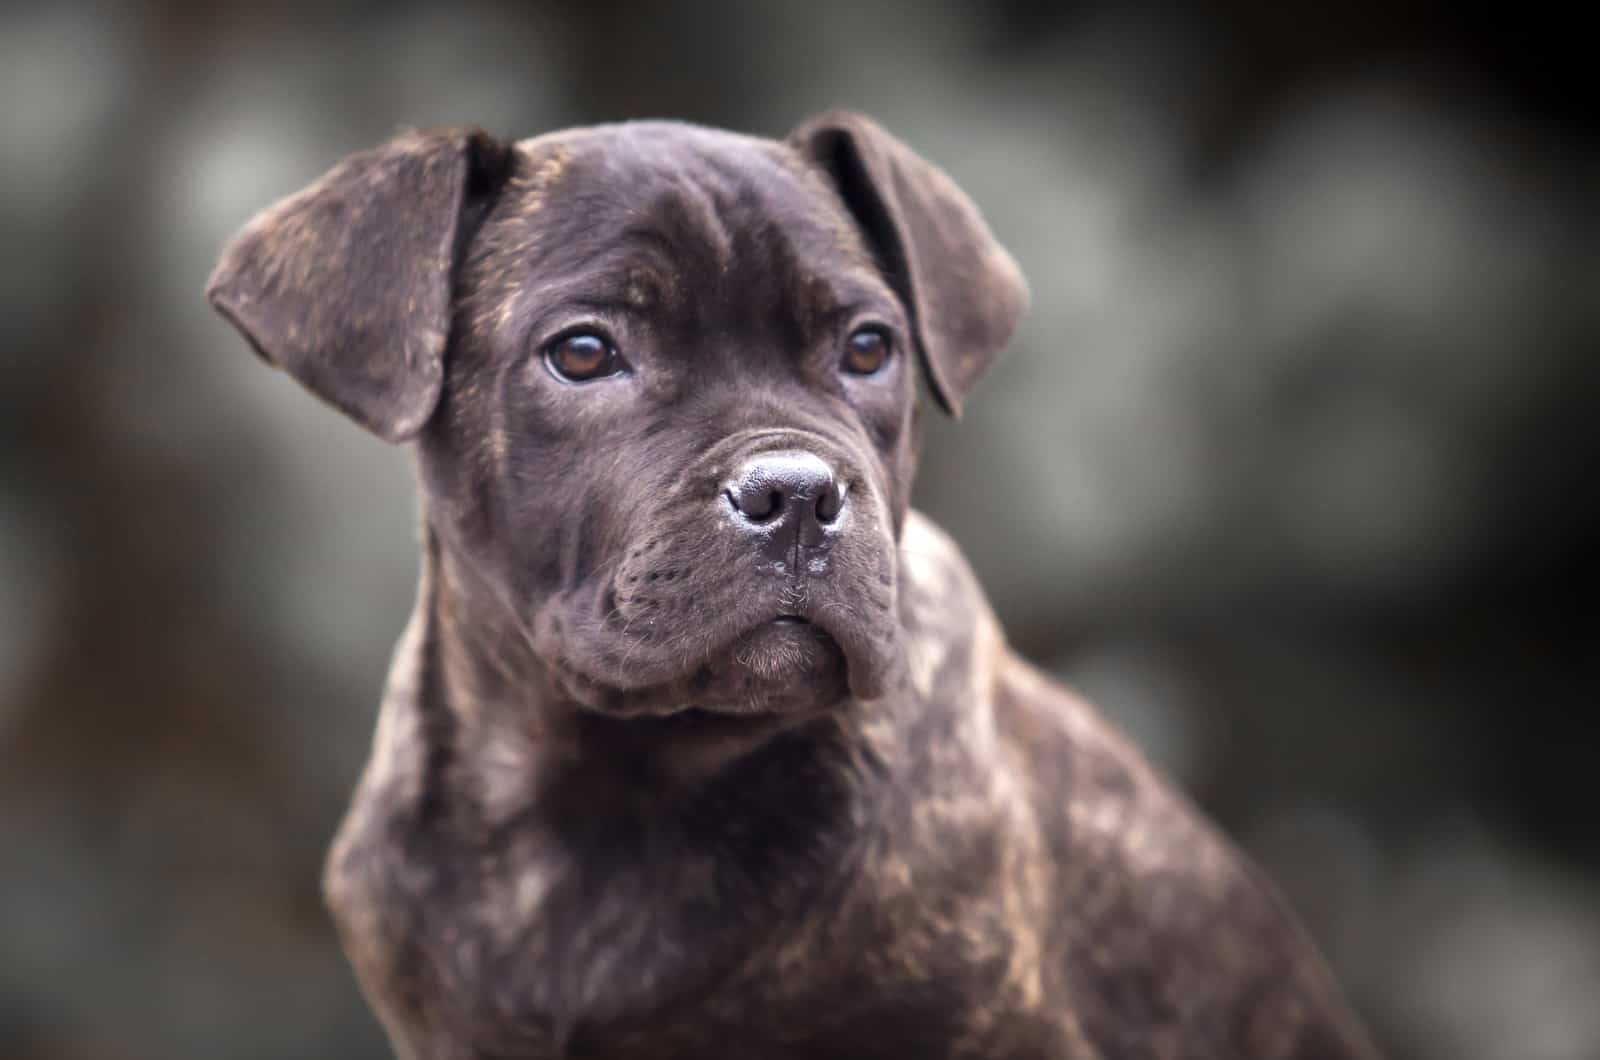 cane corso puppy close-up